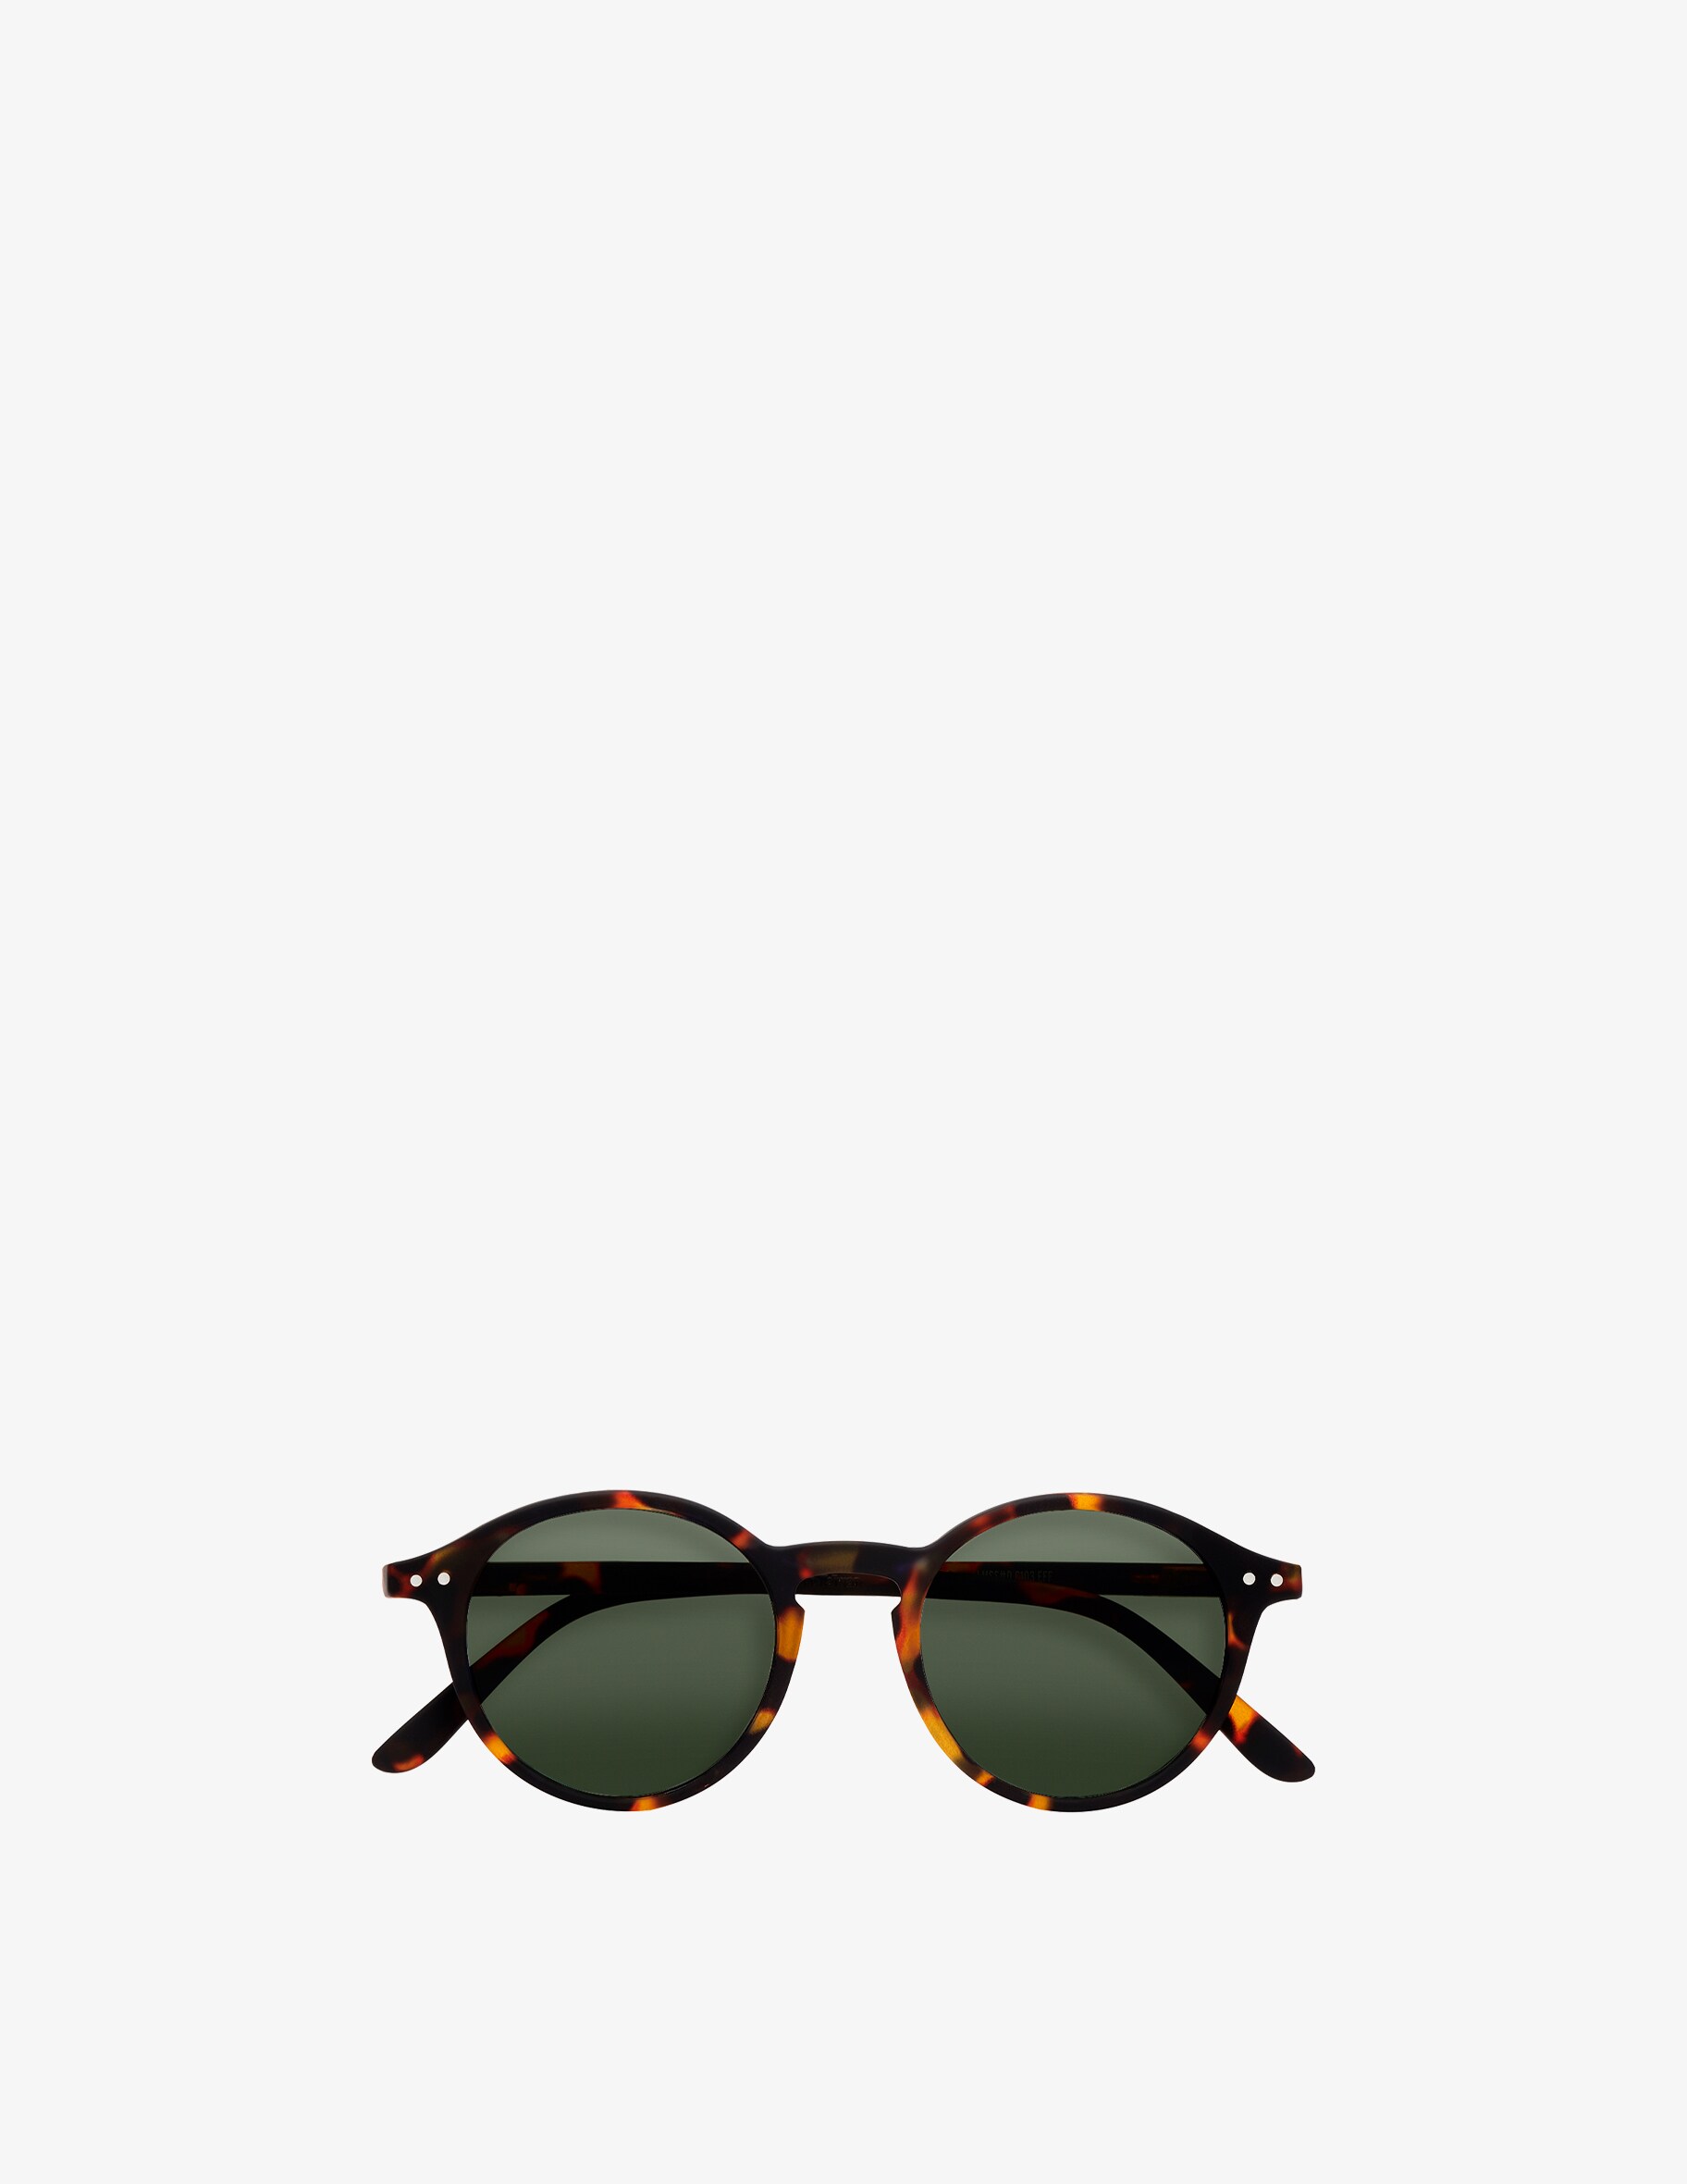 Солнцезащитные очки Модель #D Черепаховые Линзы Izipizi цена и фото